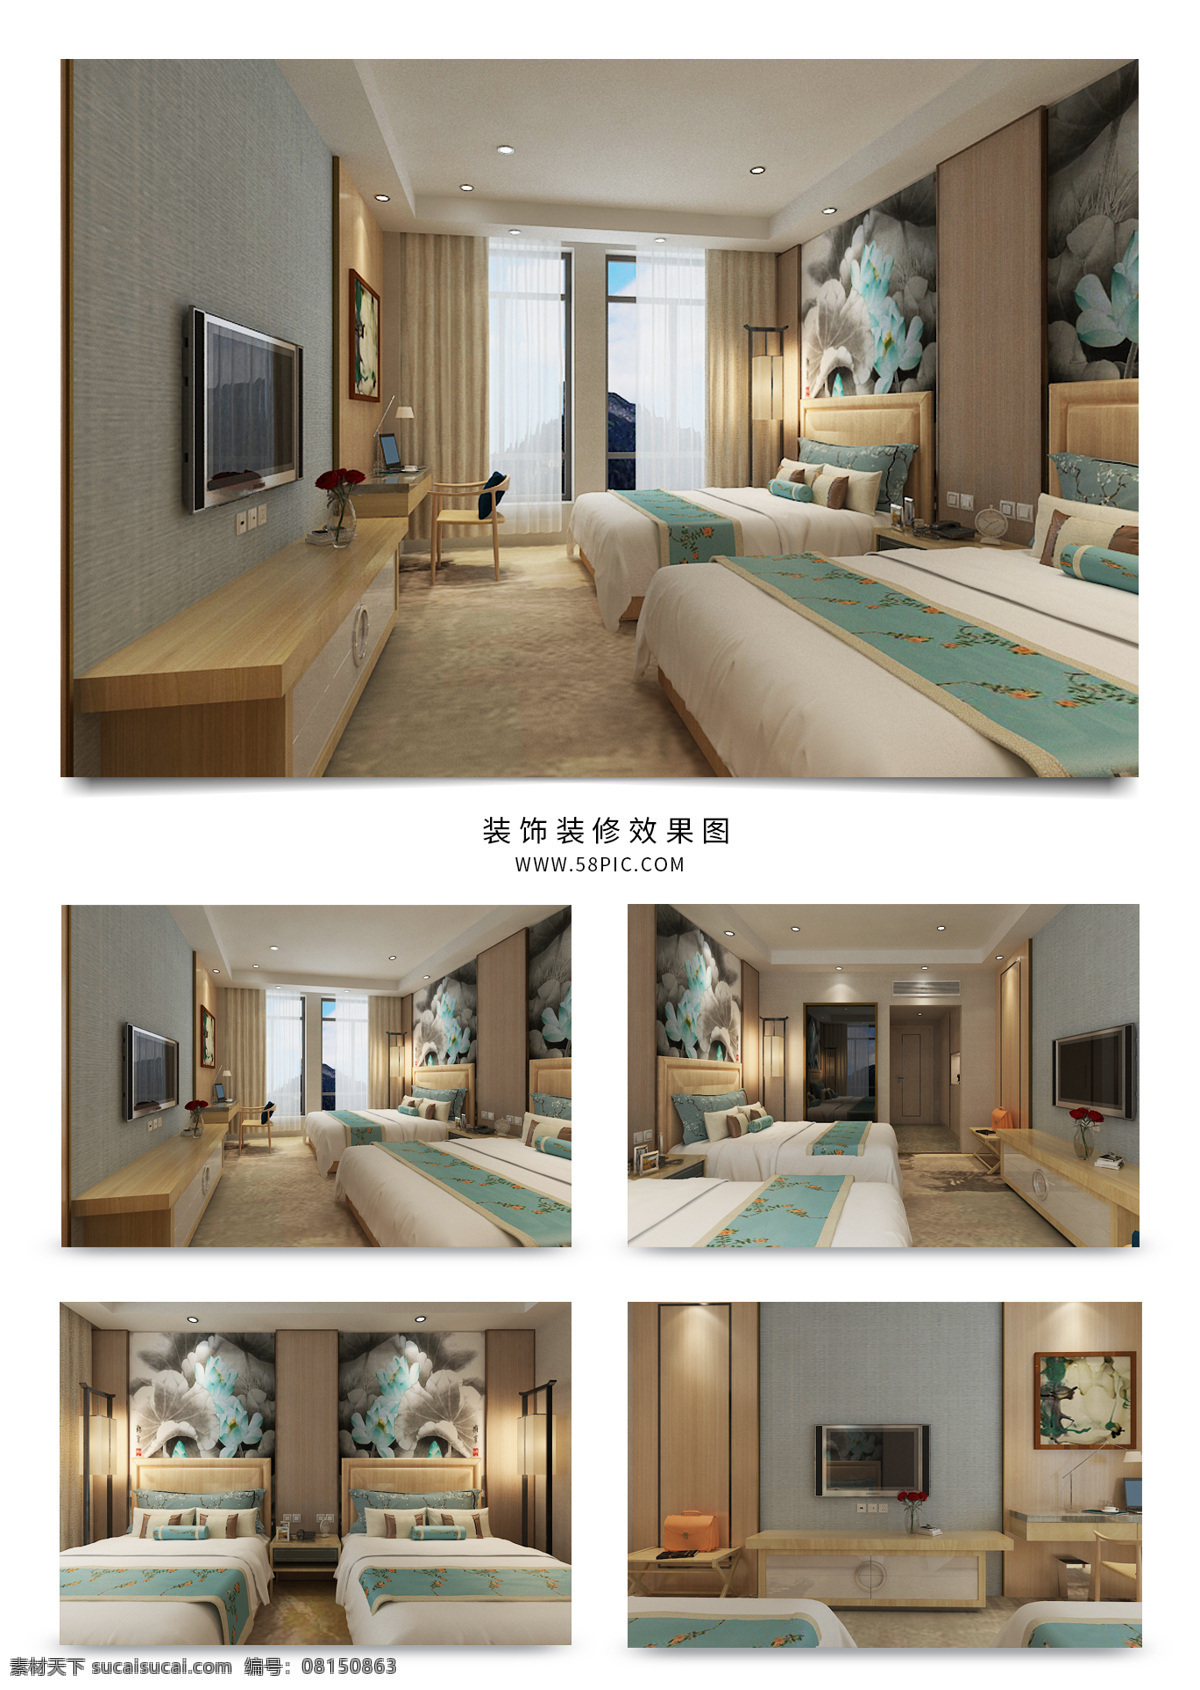 现代 新 中式 客房 双人间 装修 效果图 新中式 古风 水墨画 木制 标准间 温暖色 简约风